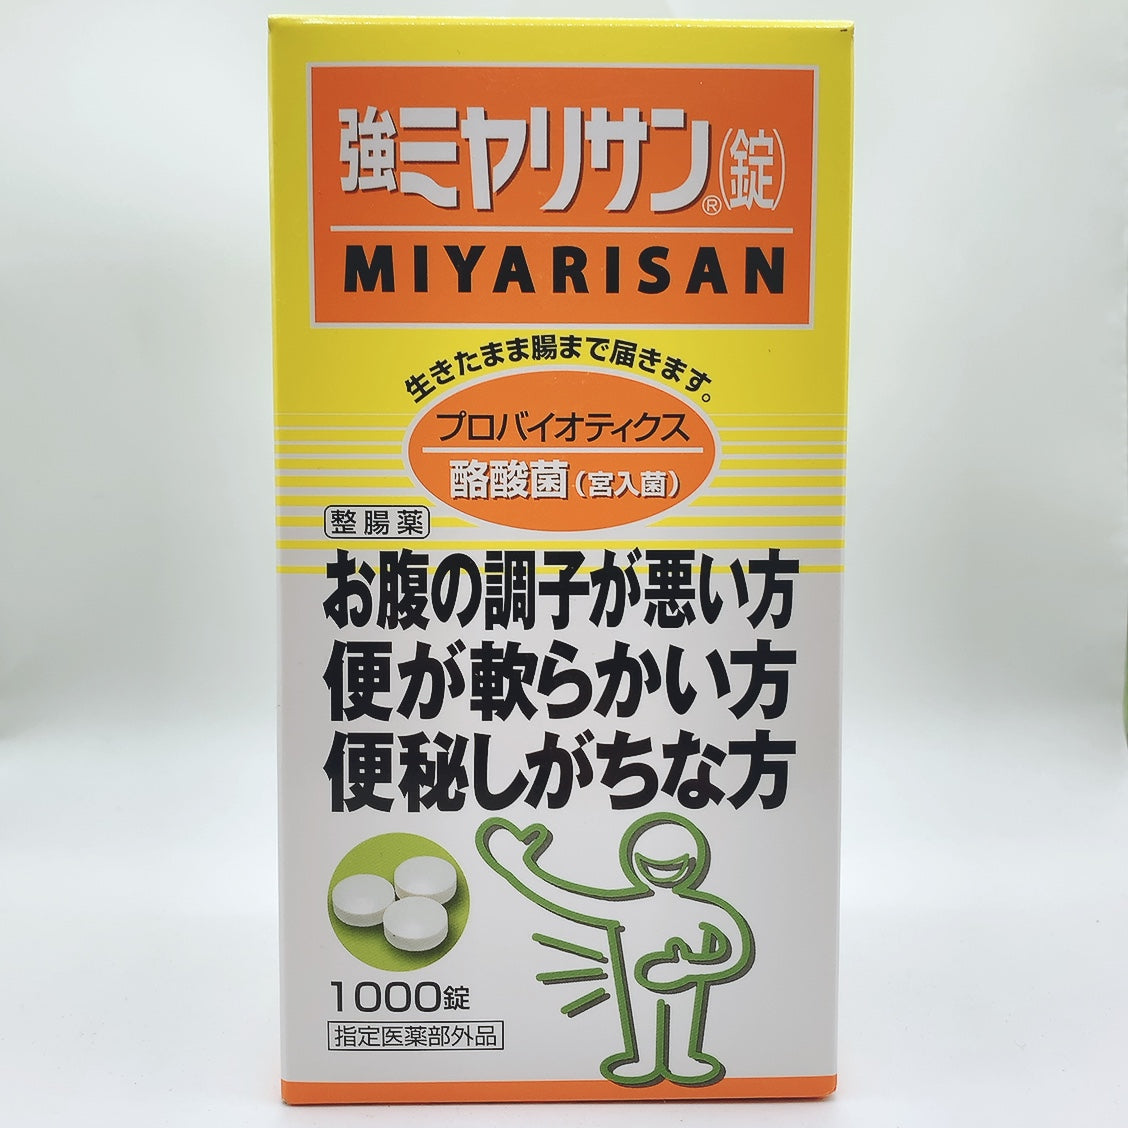 Strong Miyarisan Clostridium butyricum 1000 Tablets